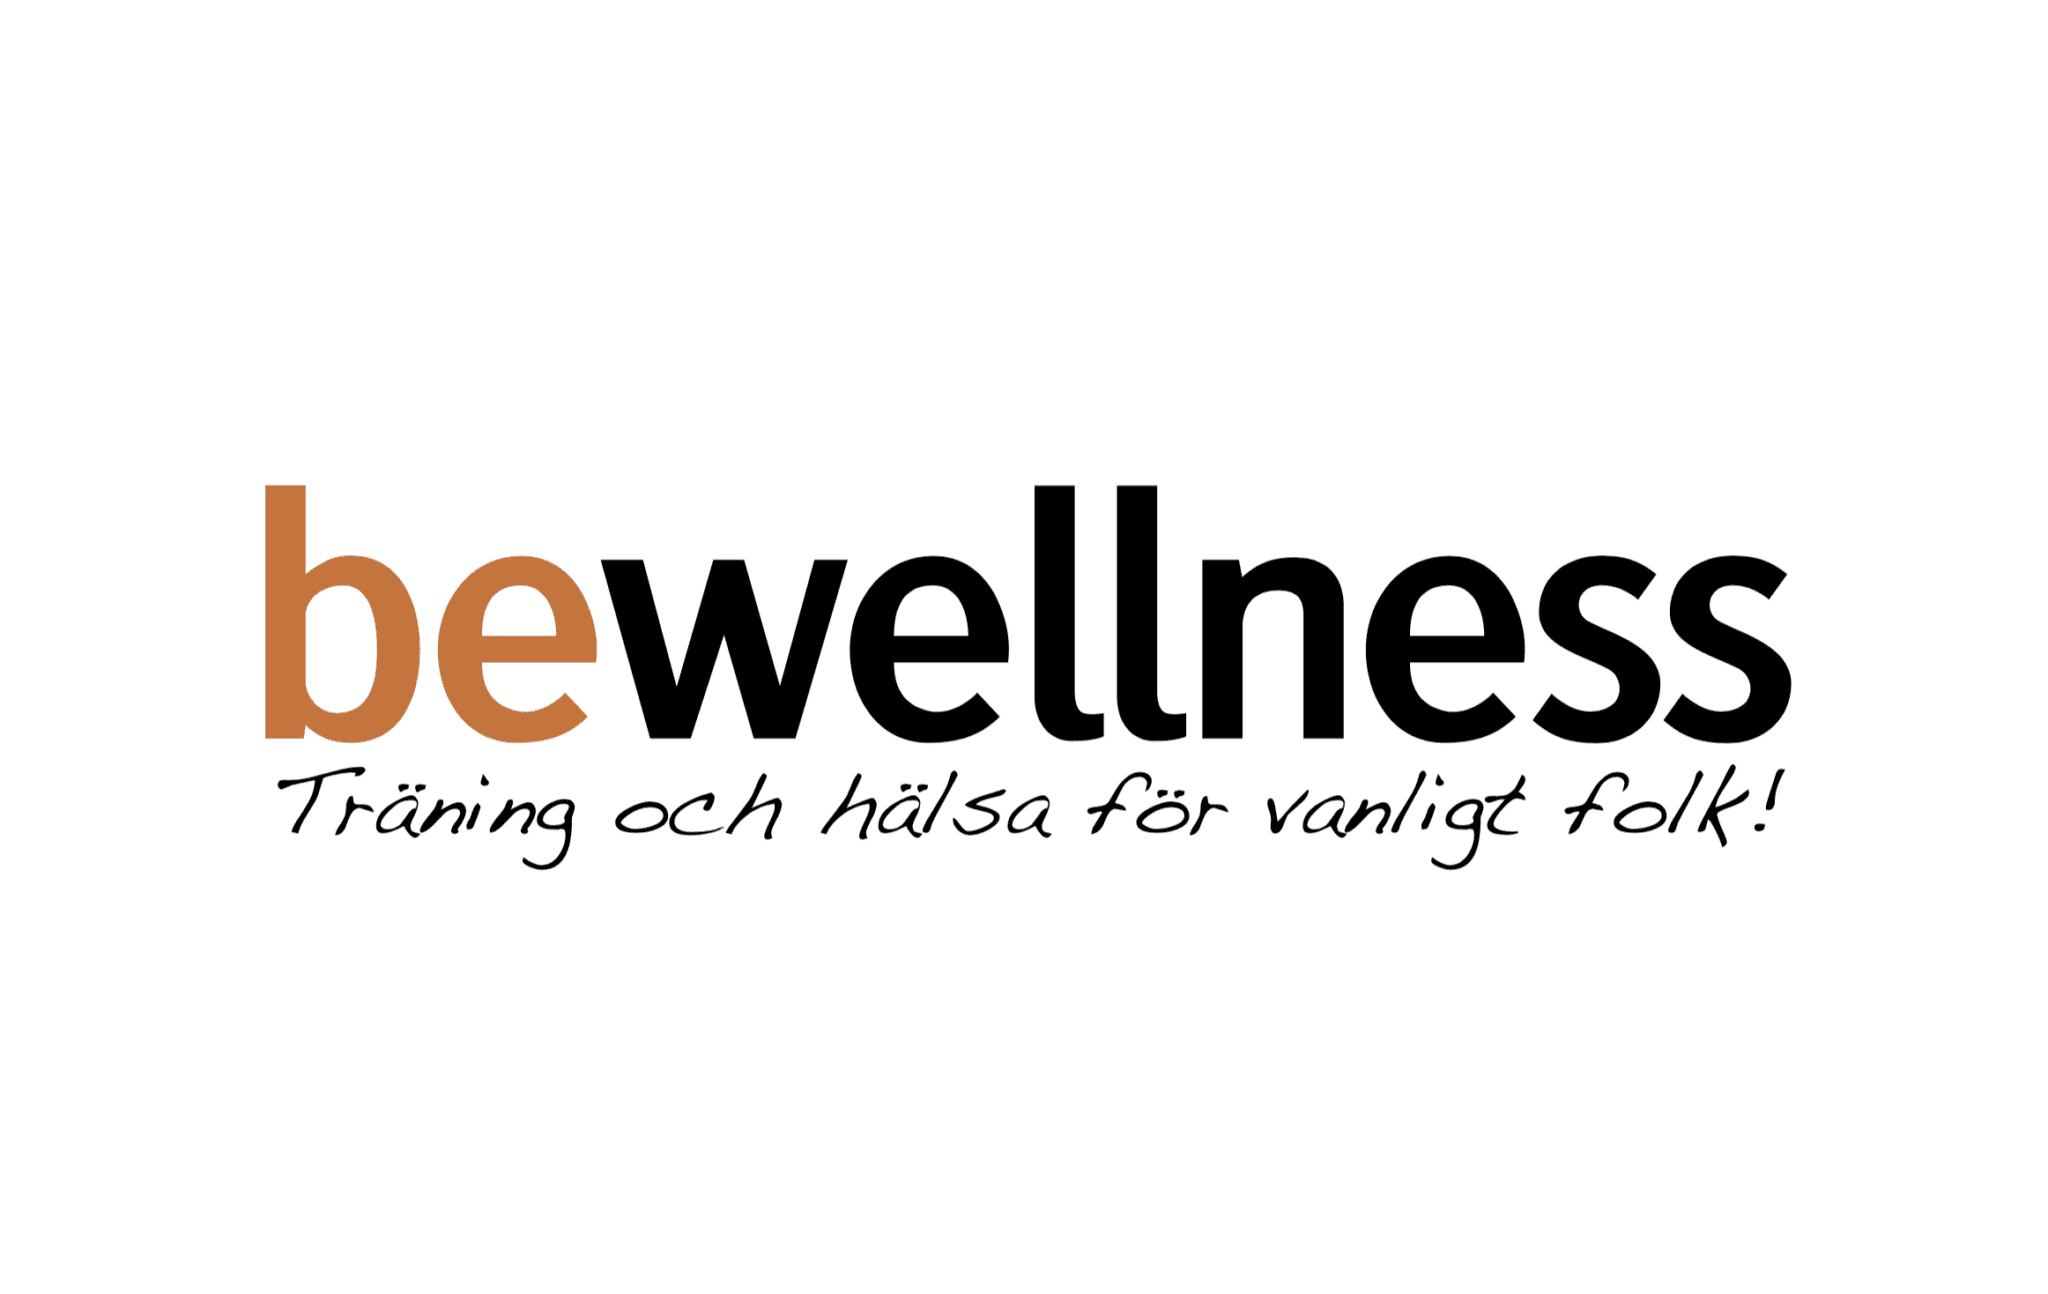 Bewellness